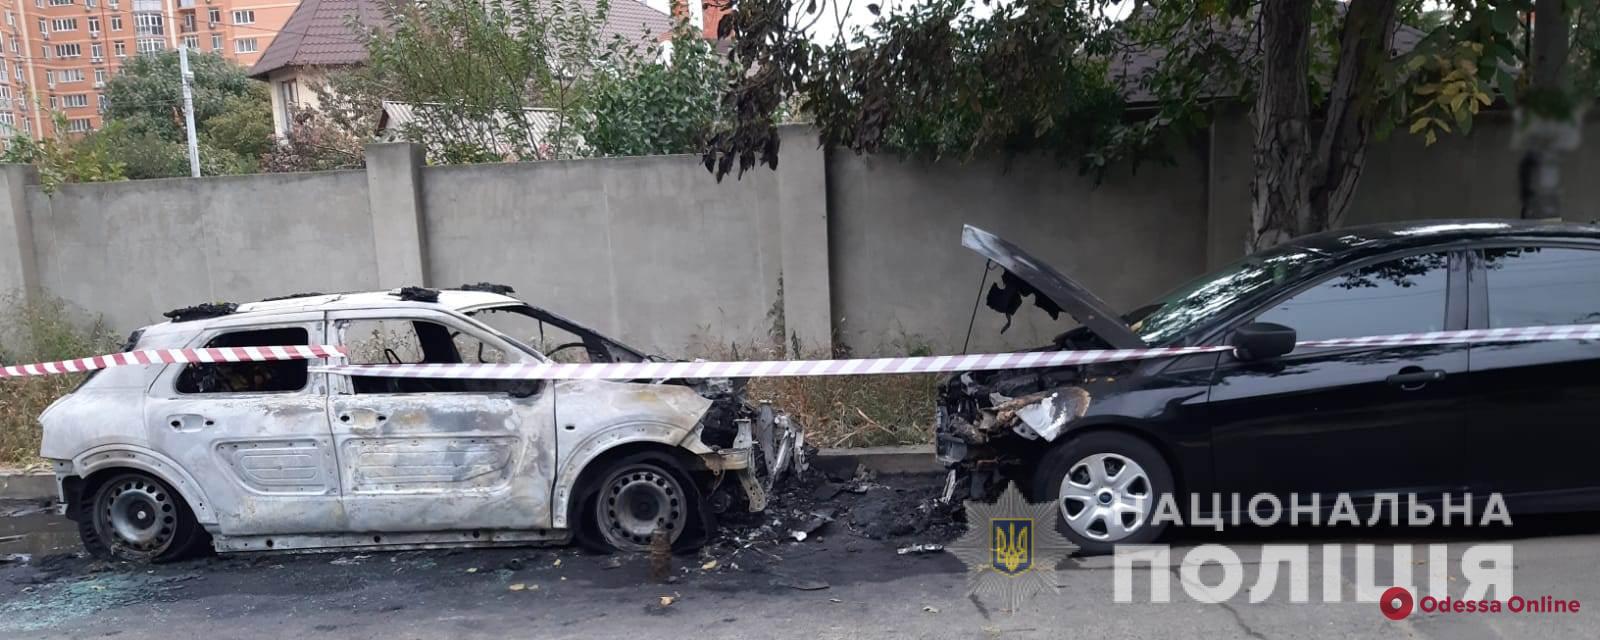 В Одессе неизвестные подожгли две машины